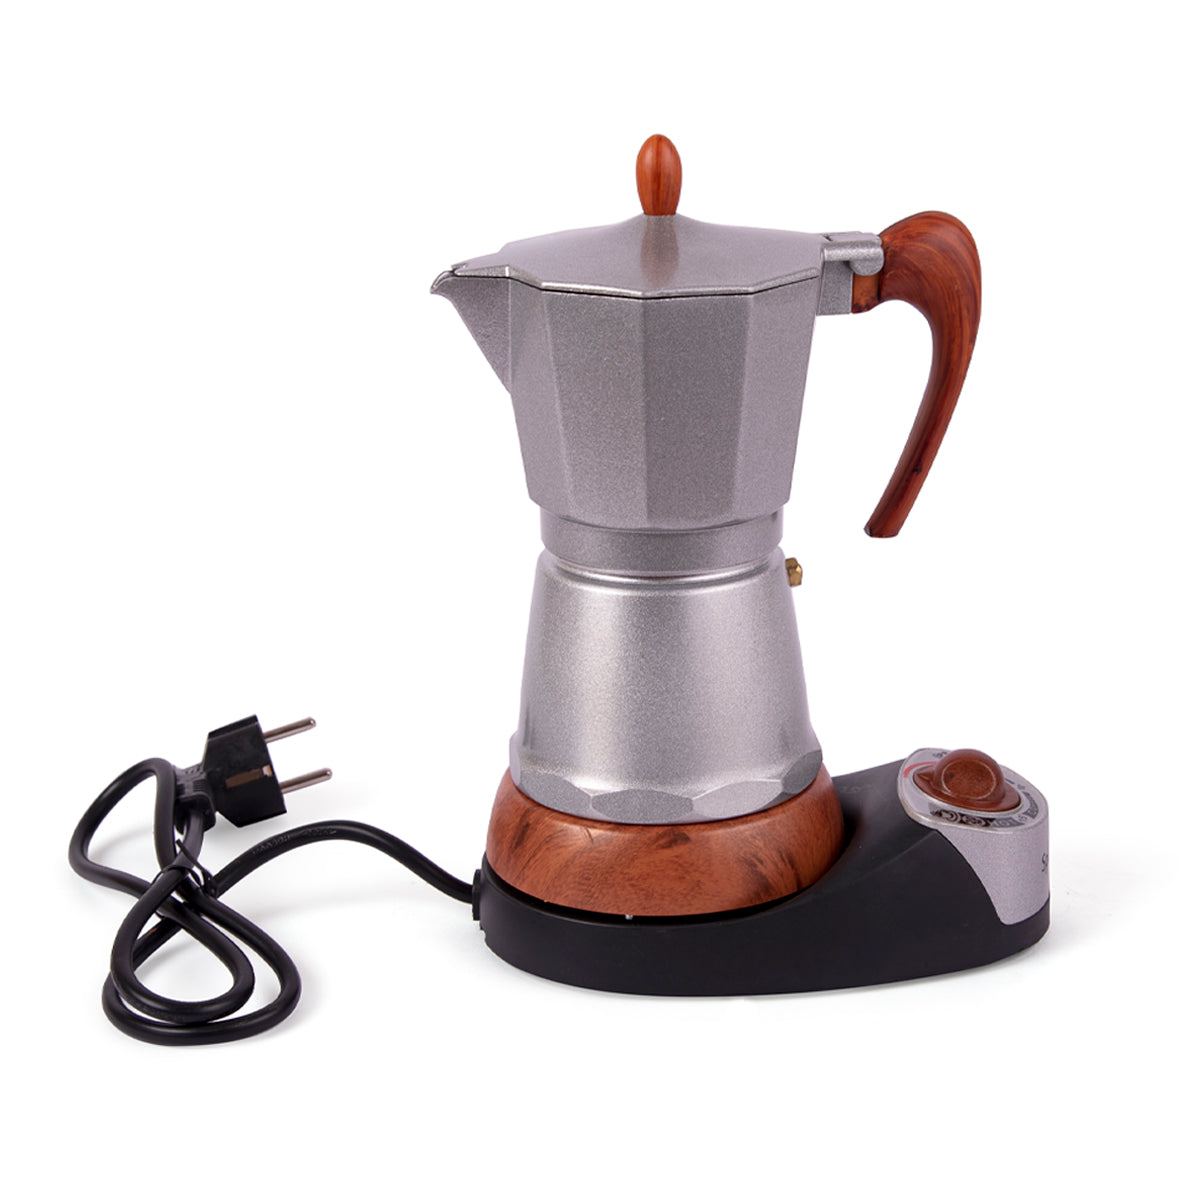 http://cothas.com/cdn/shop/products/Electric-coffee-maker-2_1200x1200.jpg?v=1625249203